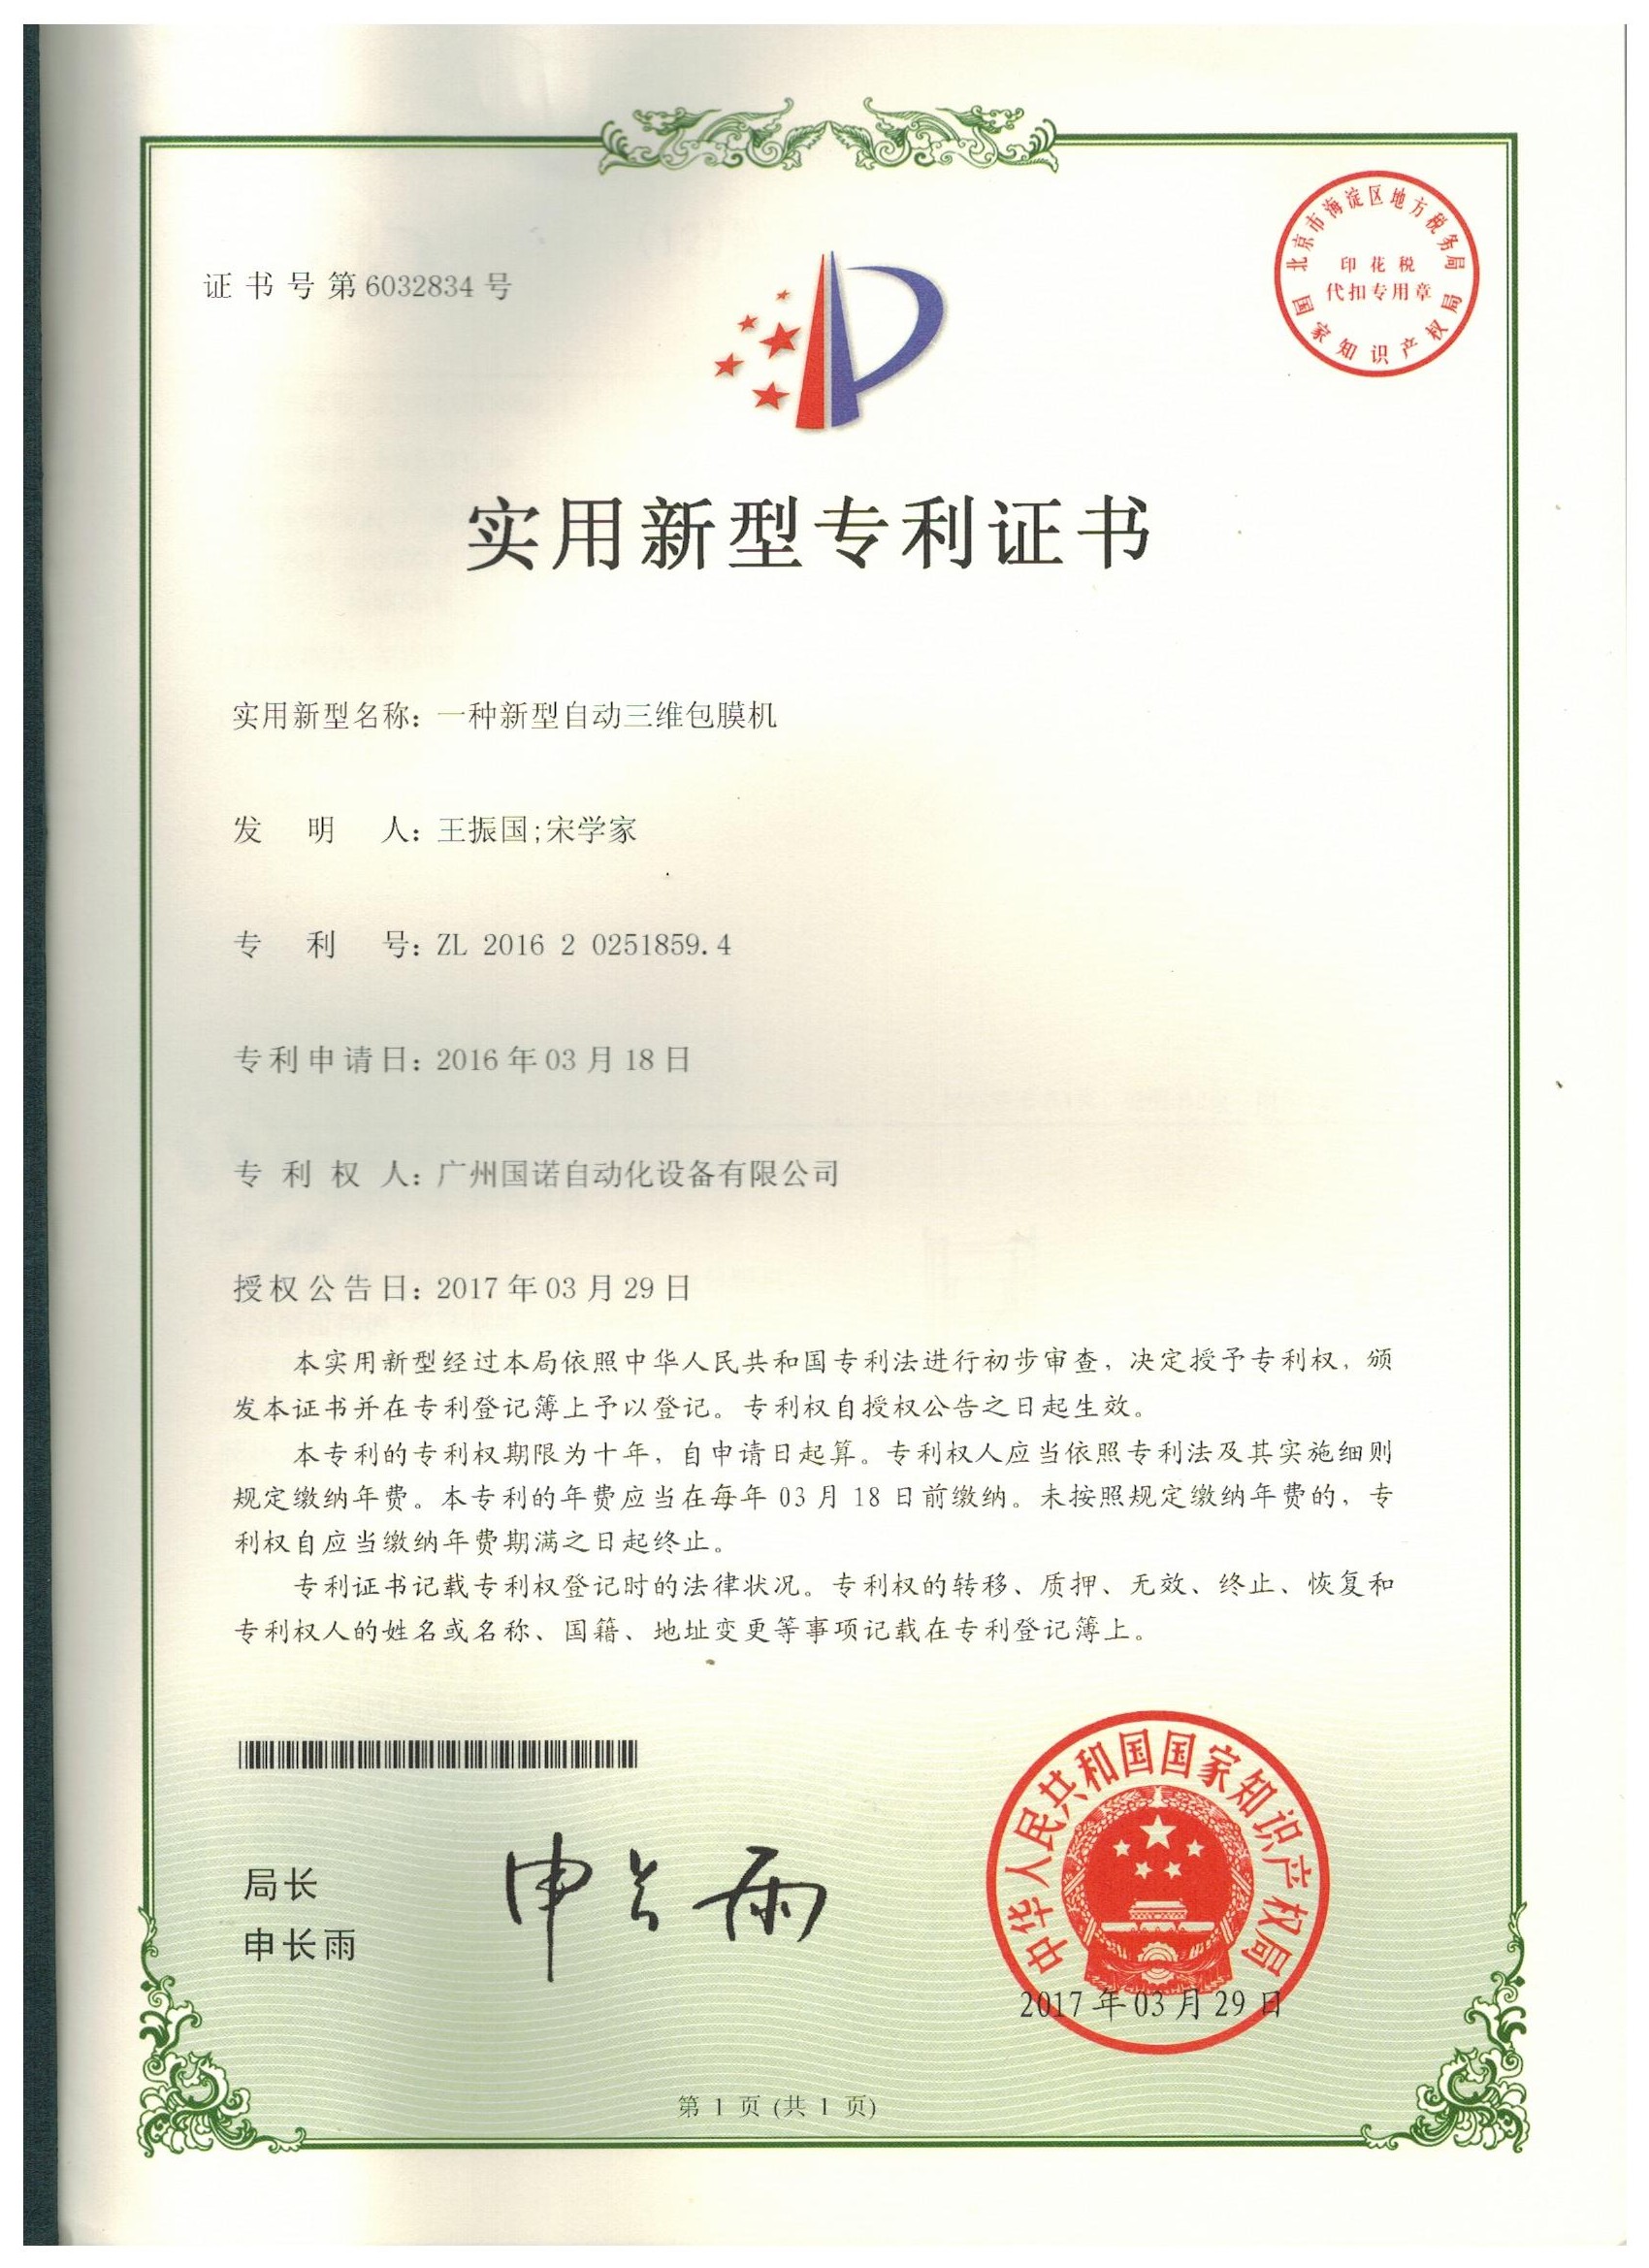 Sleeve Sealer Certificate